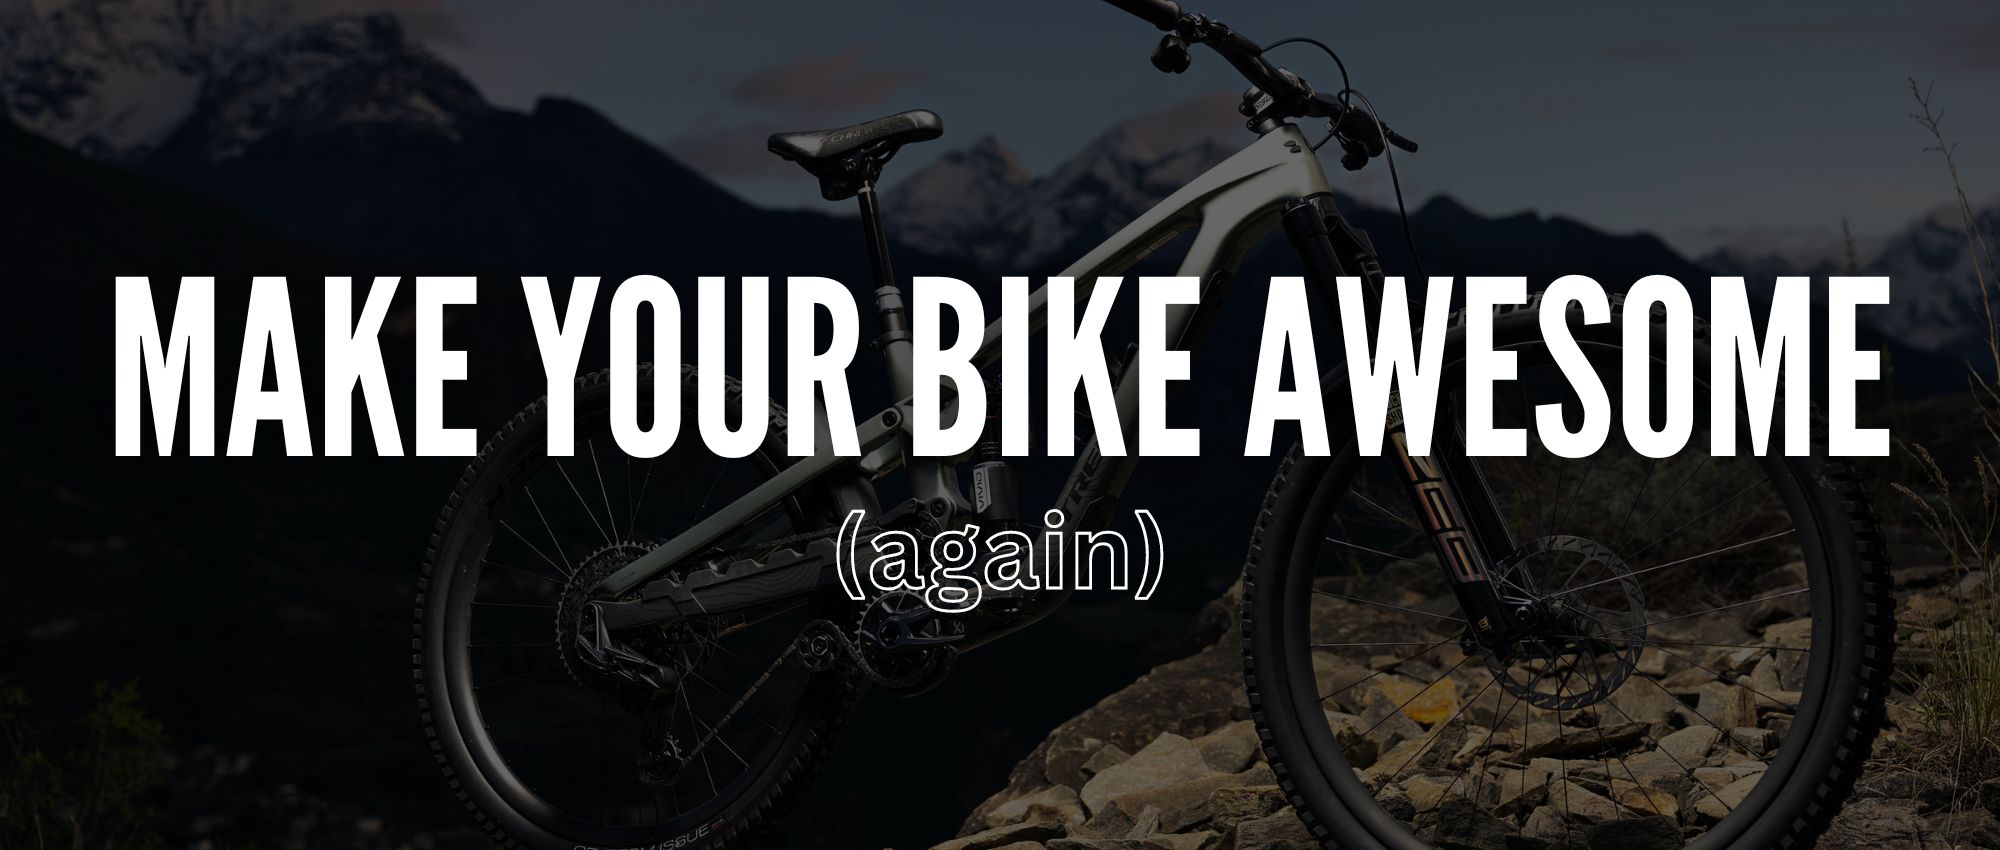 Make Your Bike Awesome (again)